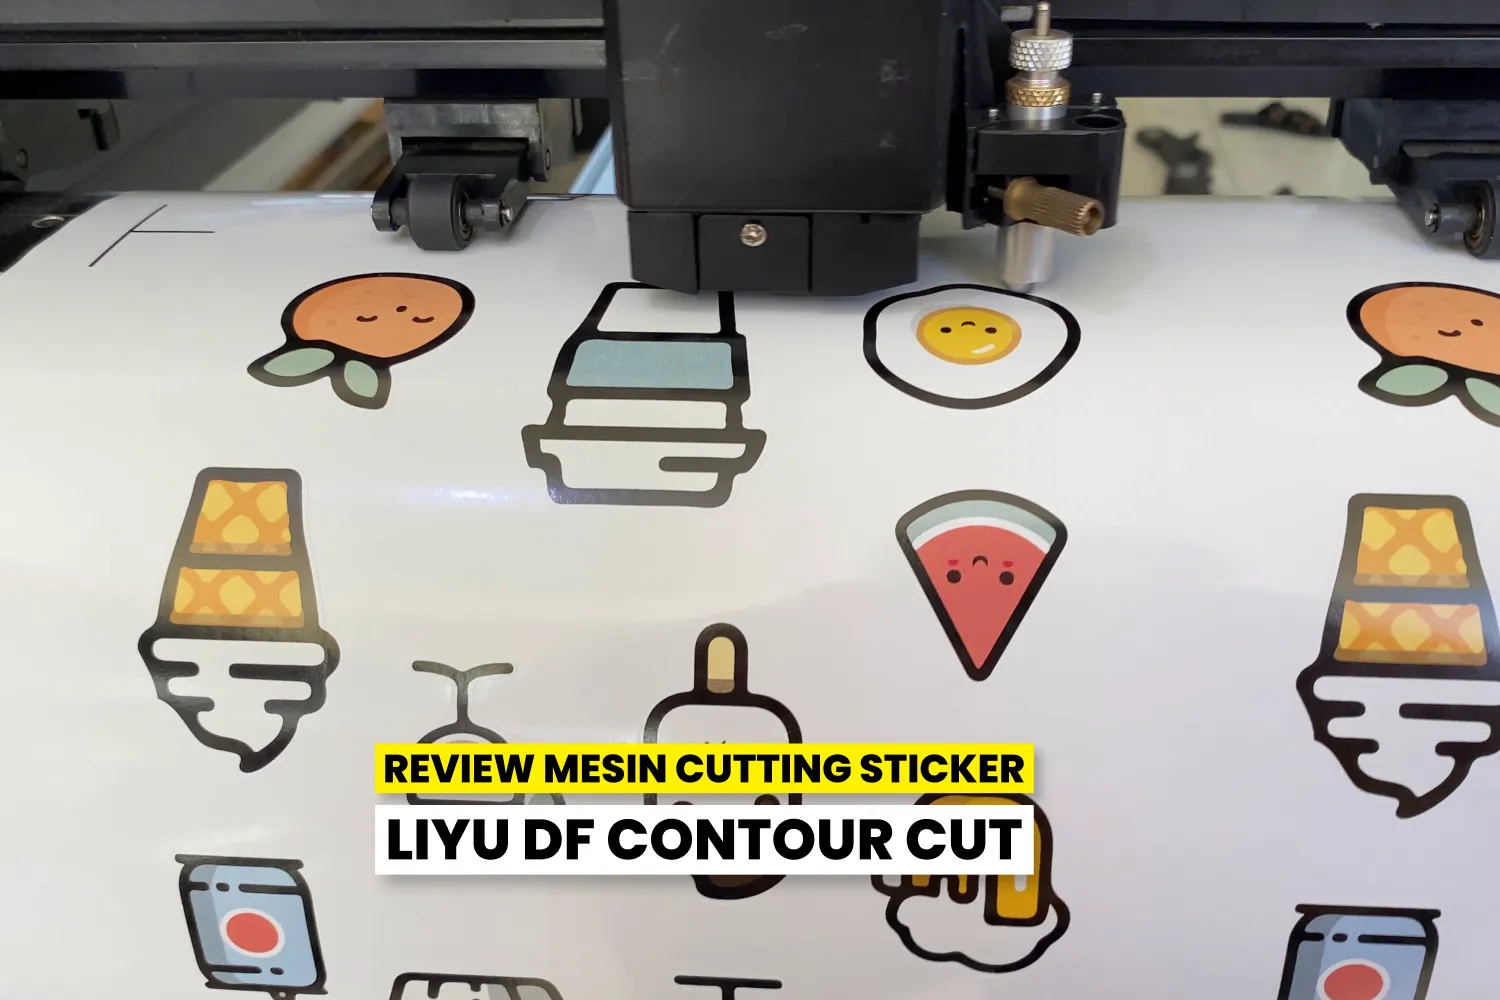 Review Mesin Cutting Sticker Liyu Df Contour Cut